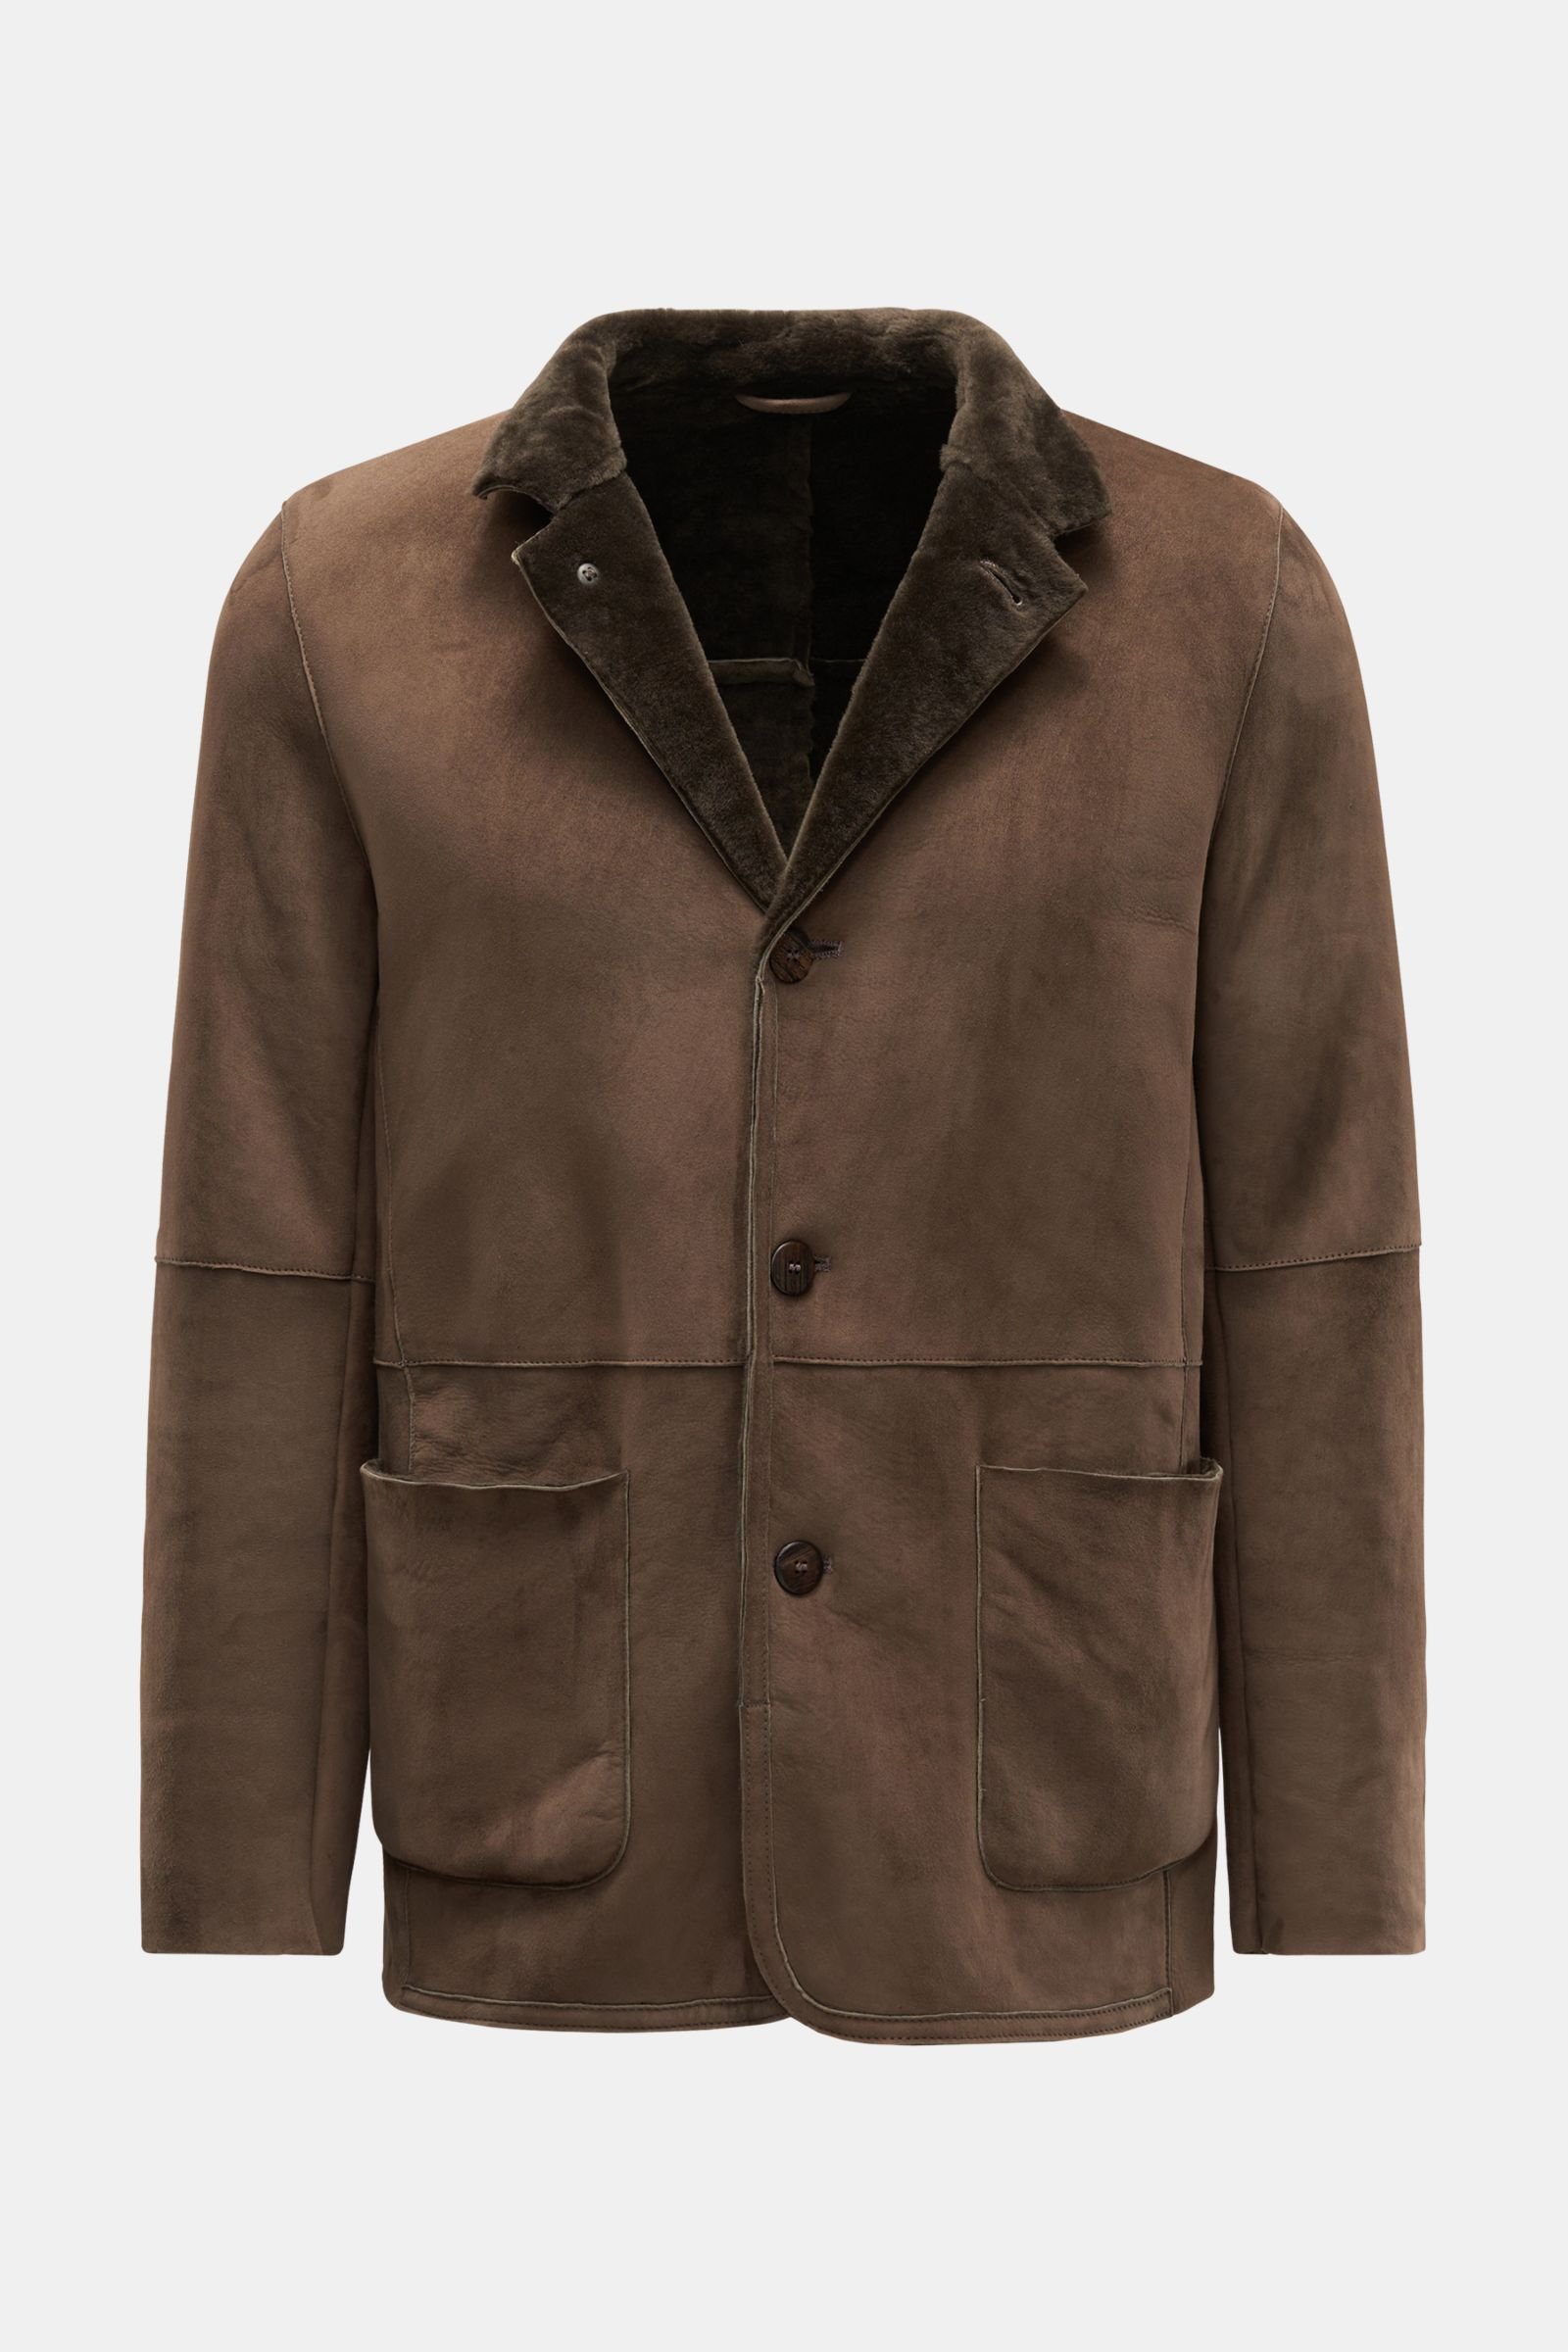 Shearling jacket brown